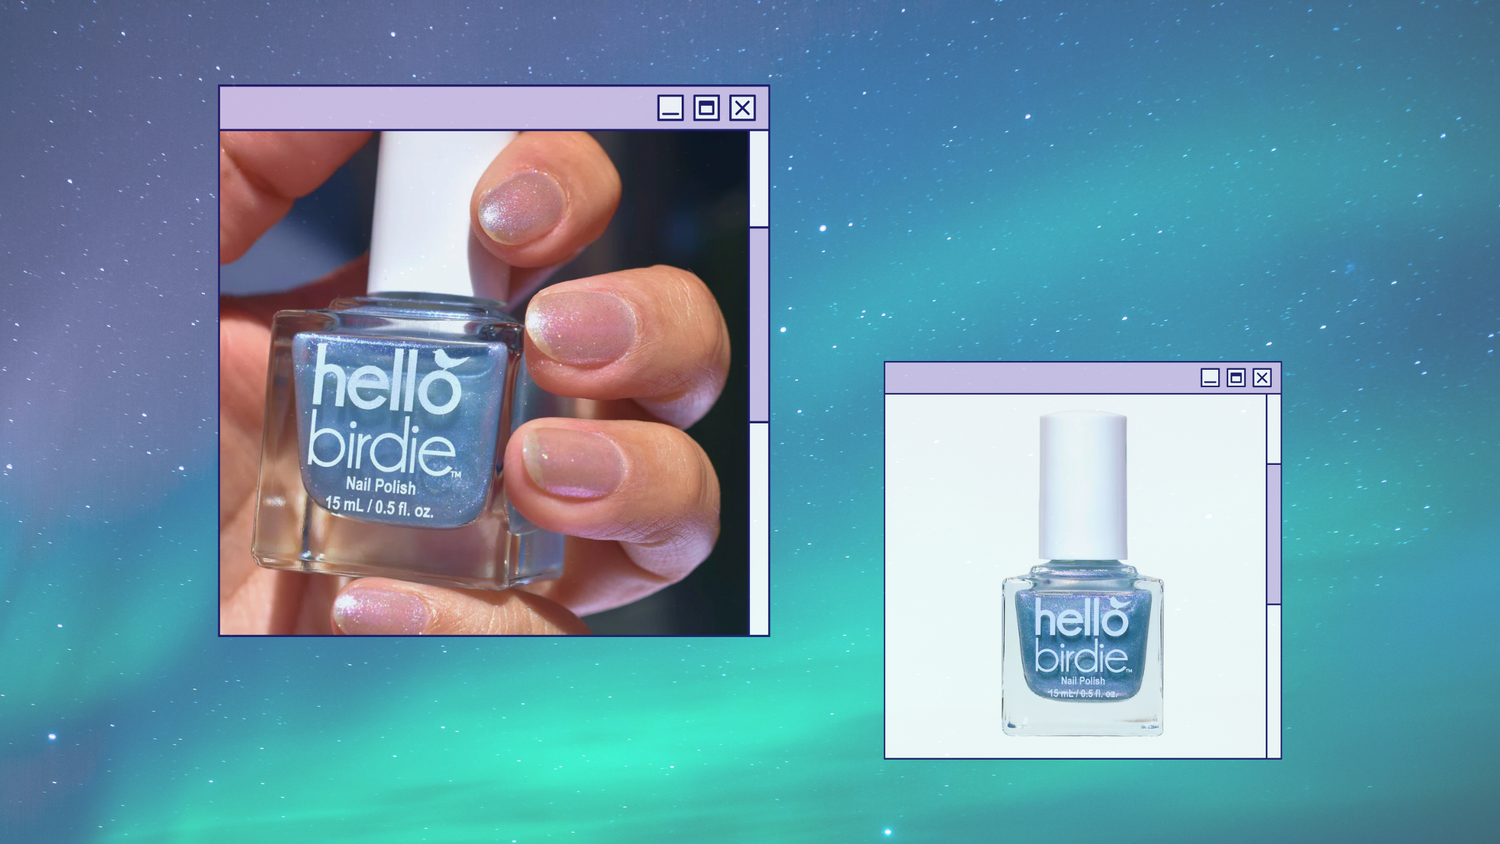 Two pastel program windows with images of Hello Birdie nail polish, on an aurora borealis background